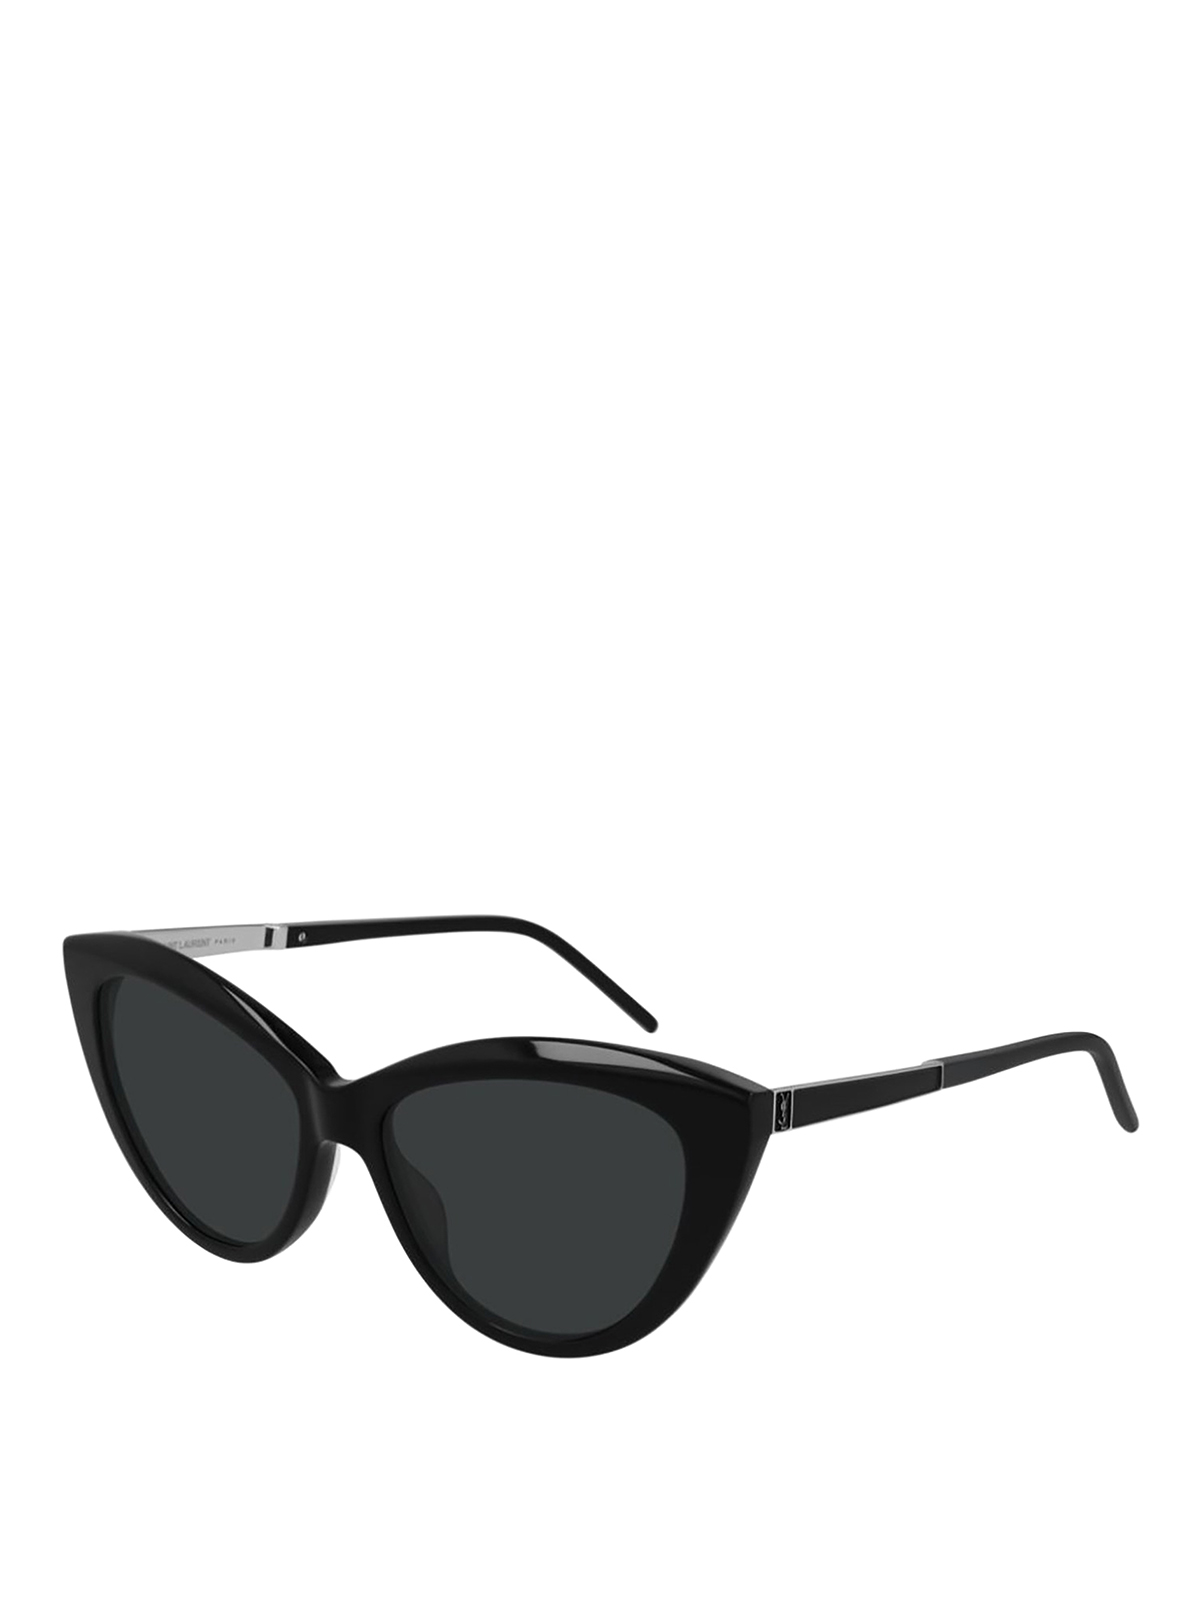 Saint Laurent Black Acetate Sunglasses